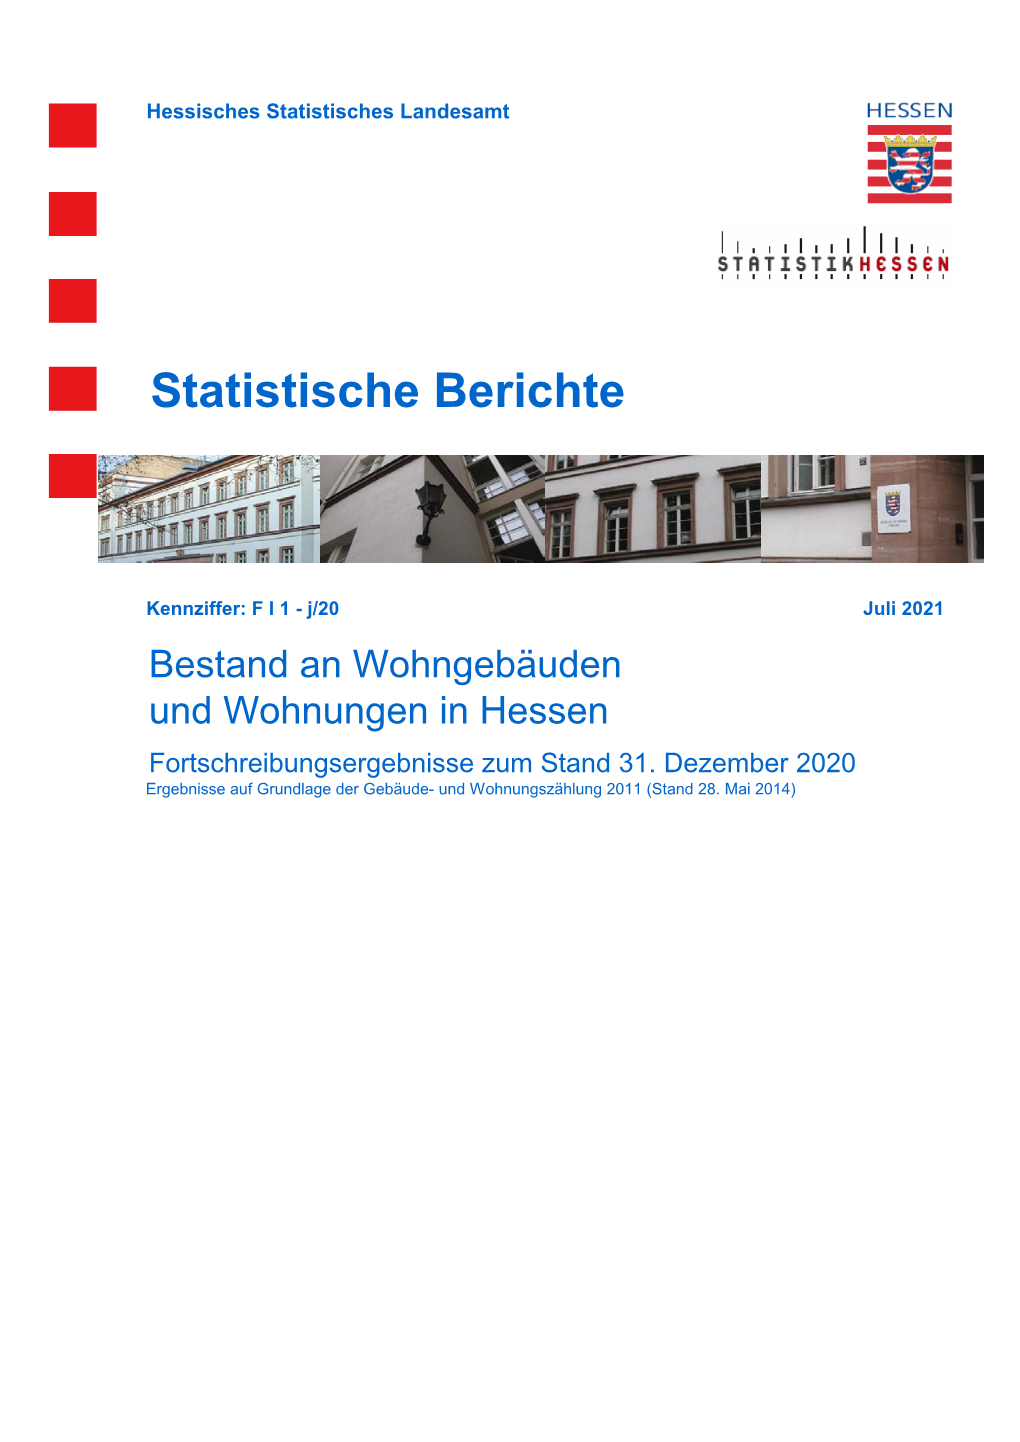 Bestand an Wohngebäuden Und Wohnungen in Hessen Fortschreibungsergebnisse Zum Stand 31